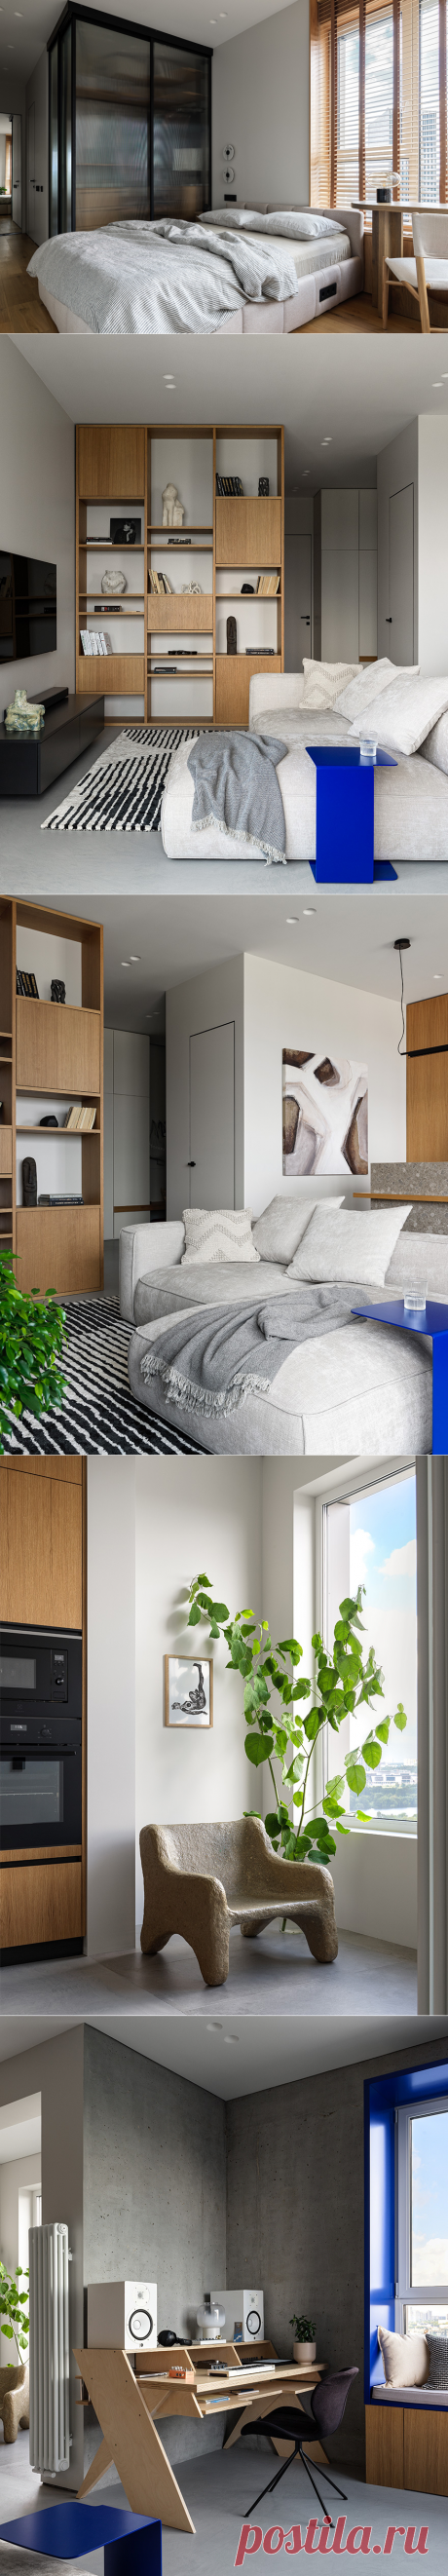 Shilova Studio: дизайн квартиры квартира с синими акцентами